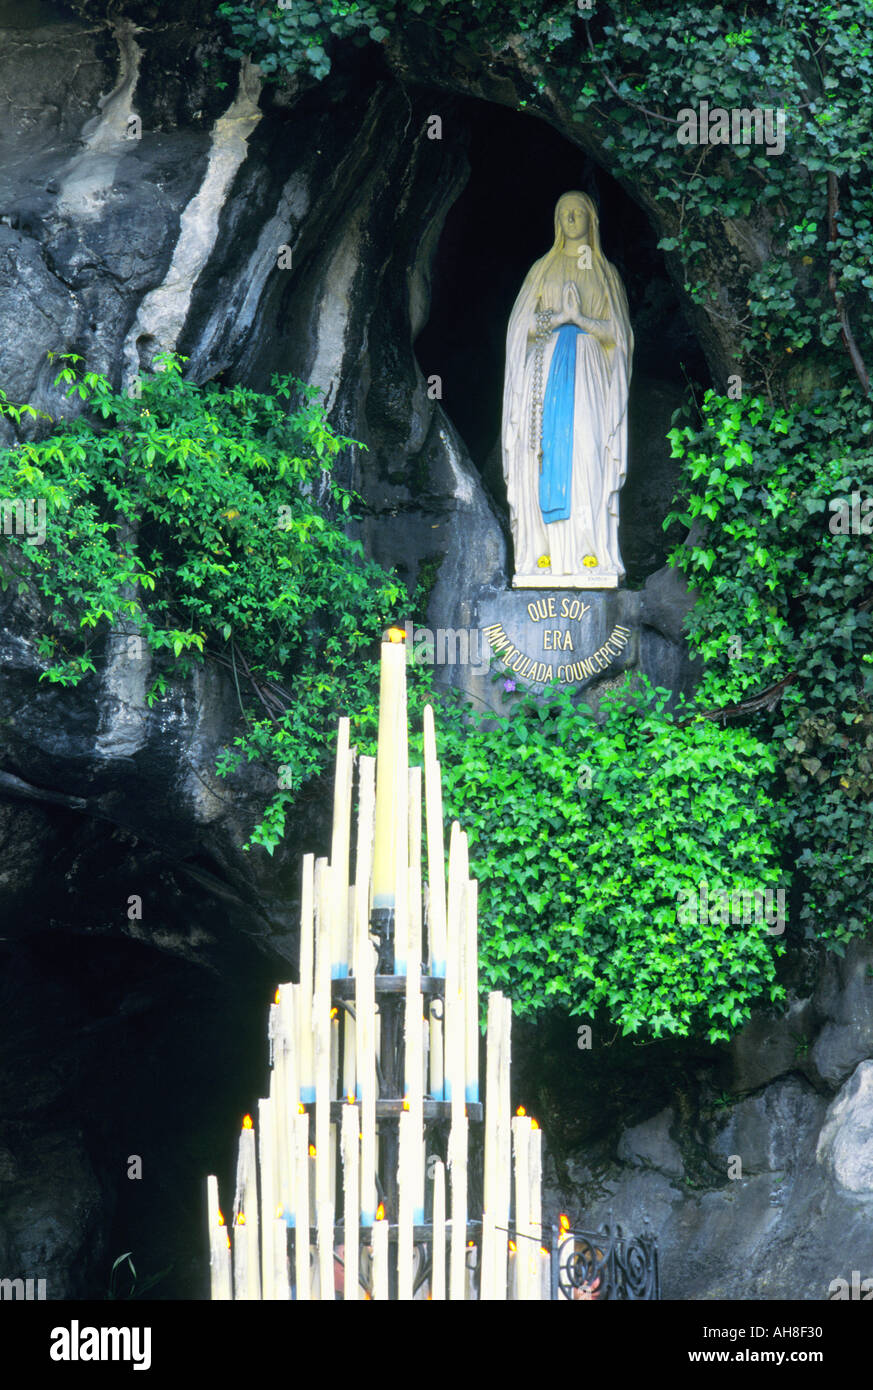 Virgin Mary Lourdes France